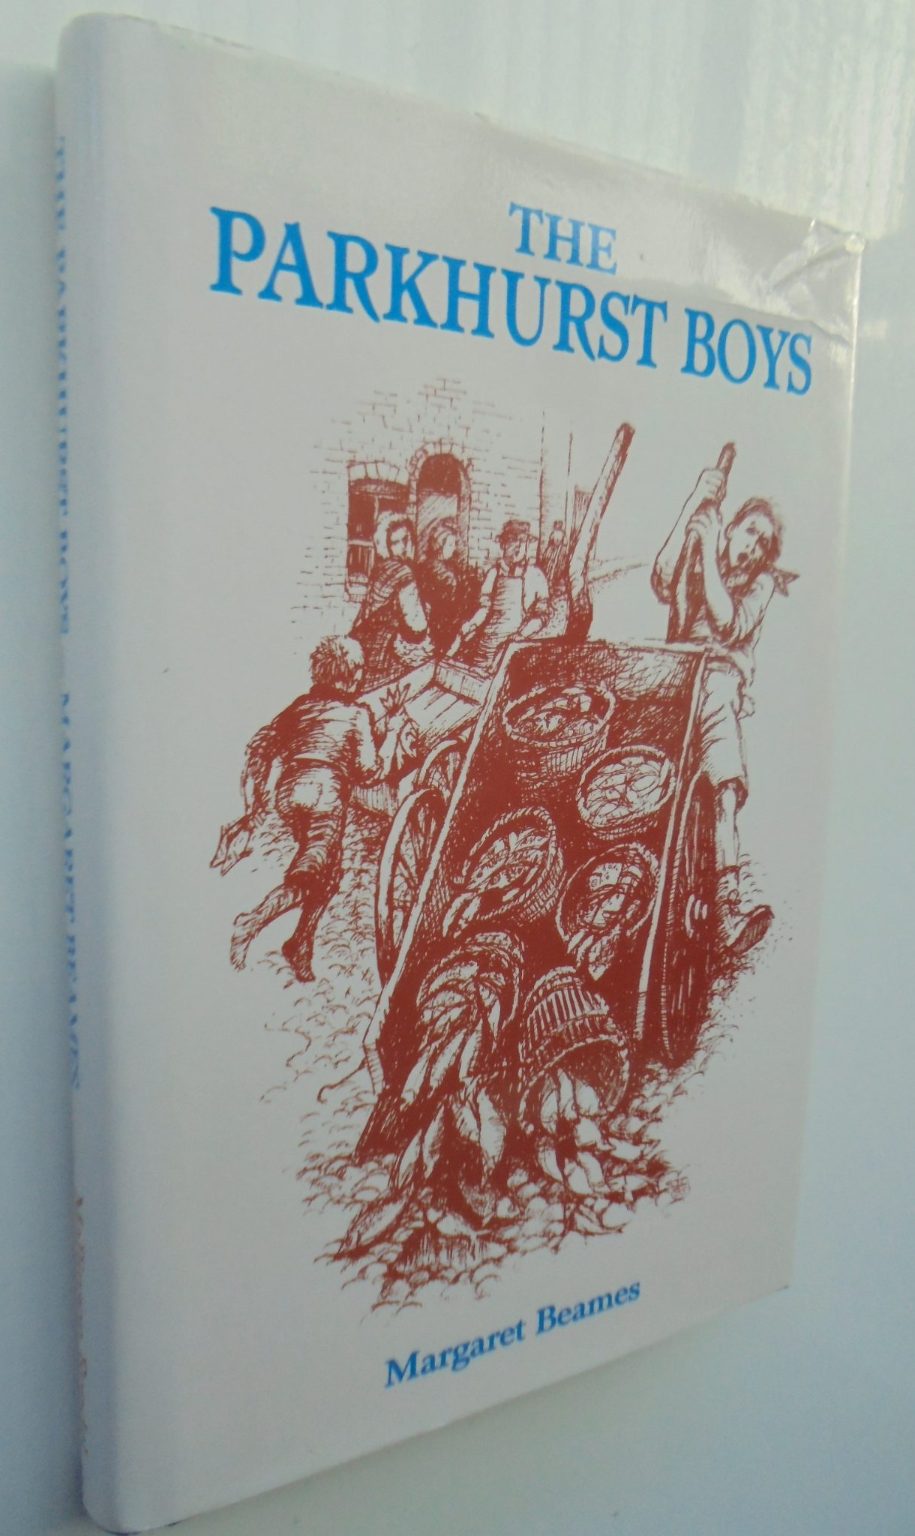 The Parkhurst Boys by Margaret Beames.